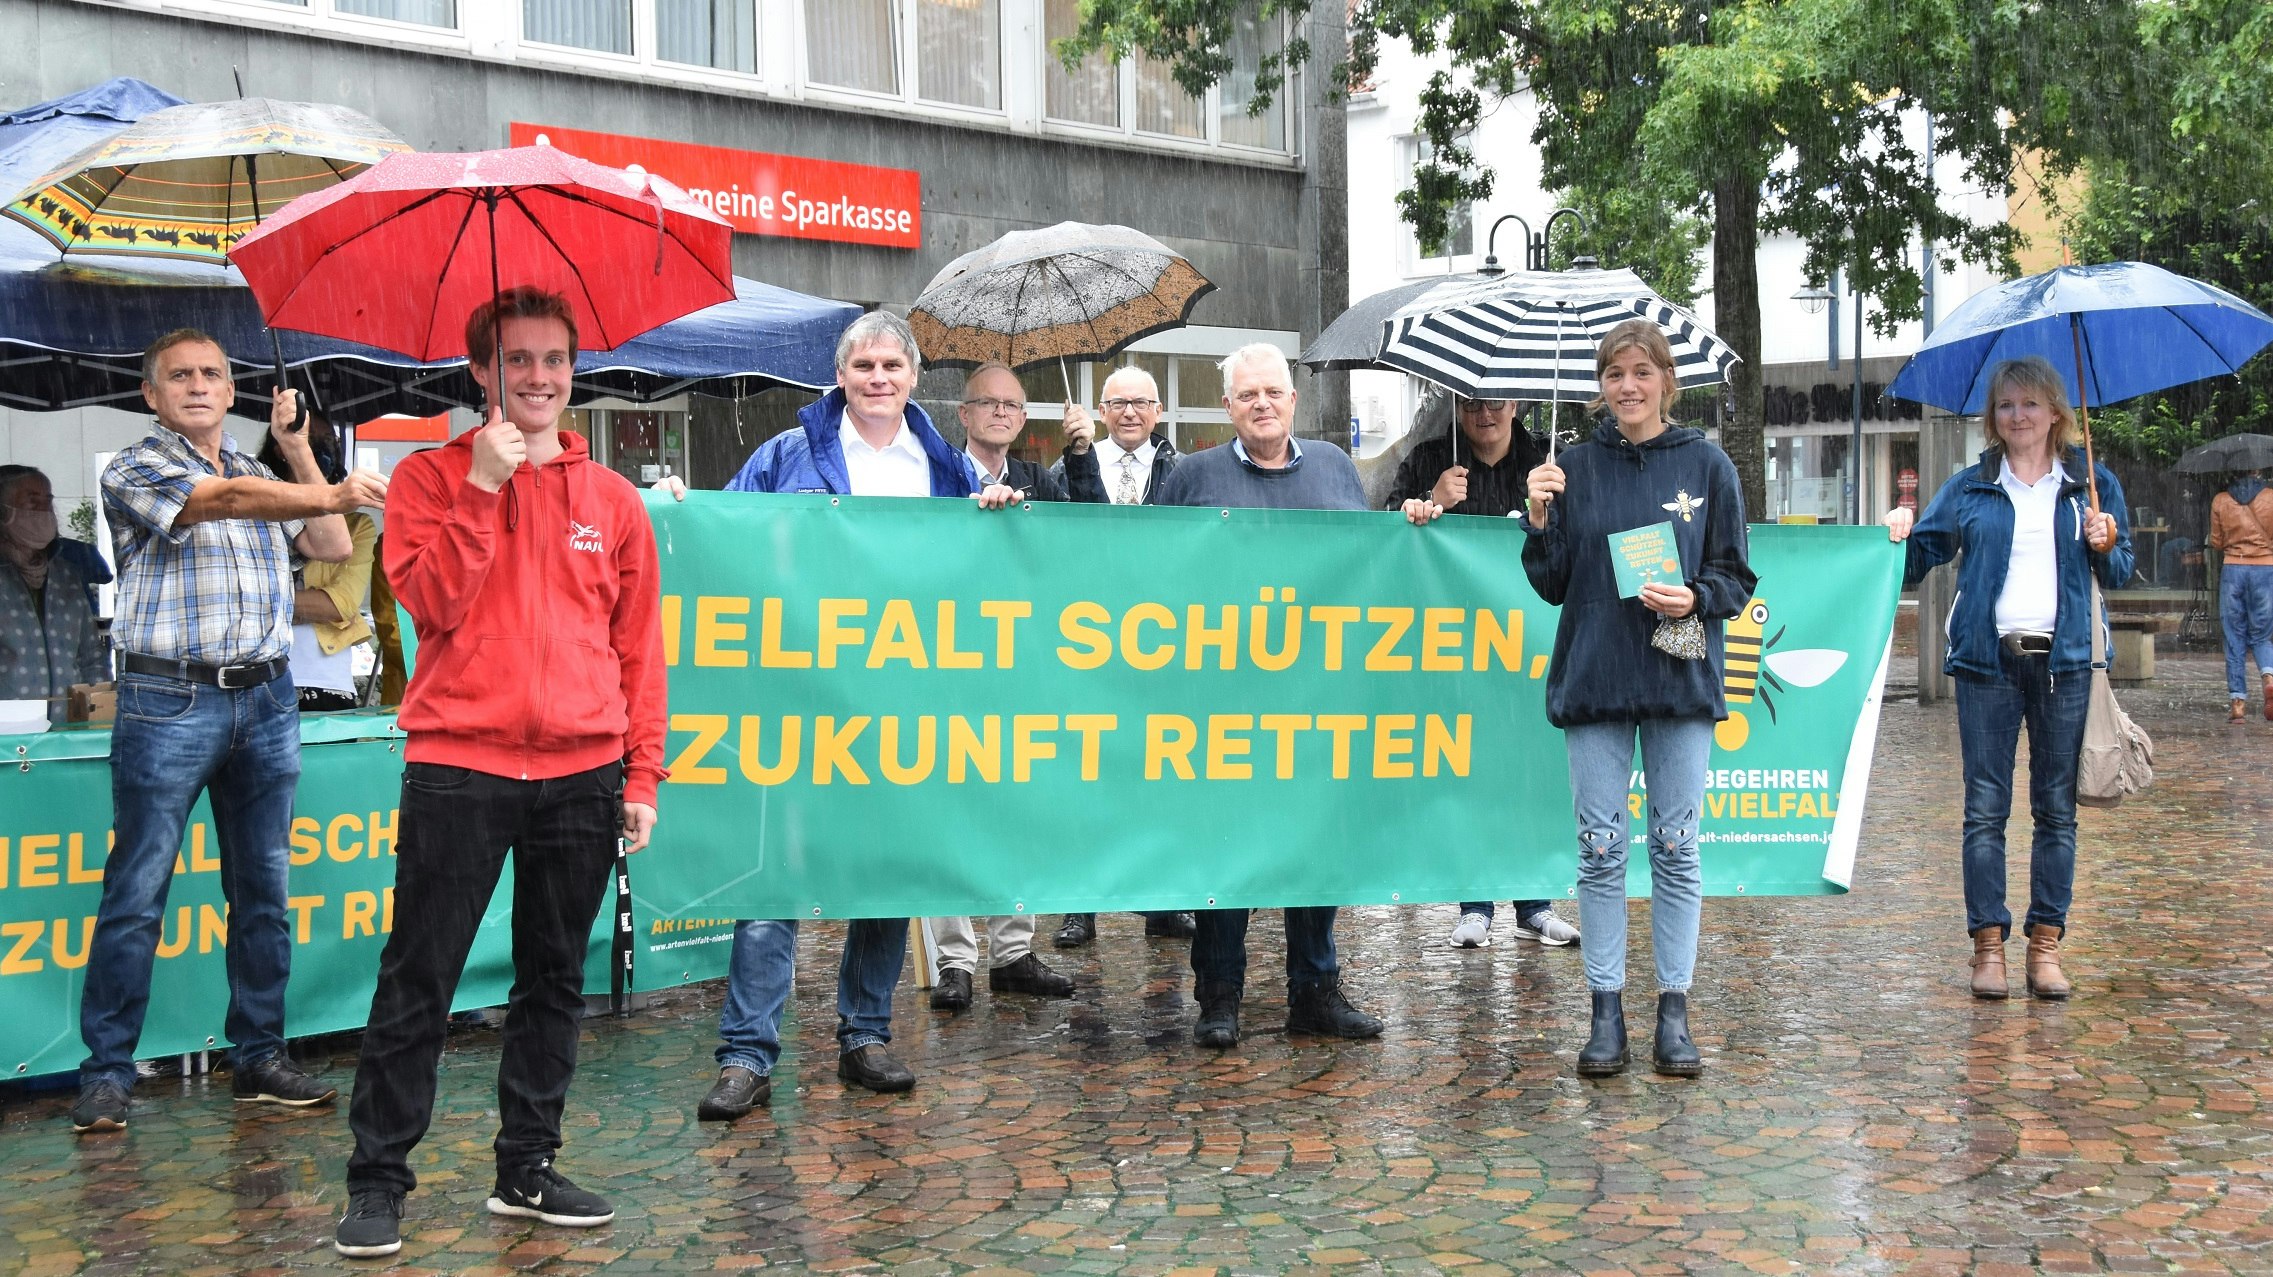 Auftakt des Volksbegehrens in Vechta: Vertreter des Aktionsbündnisses präsentierten die Initiative auf dem Neuen Markt. Foto: Tzimurtas